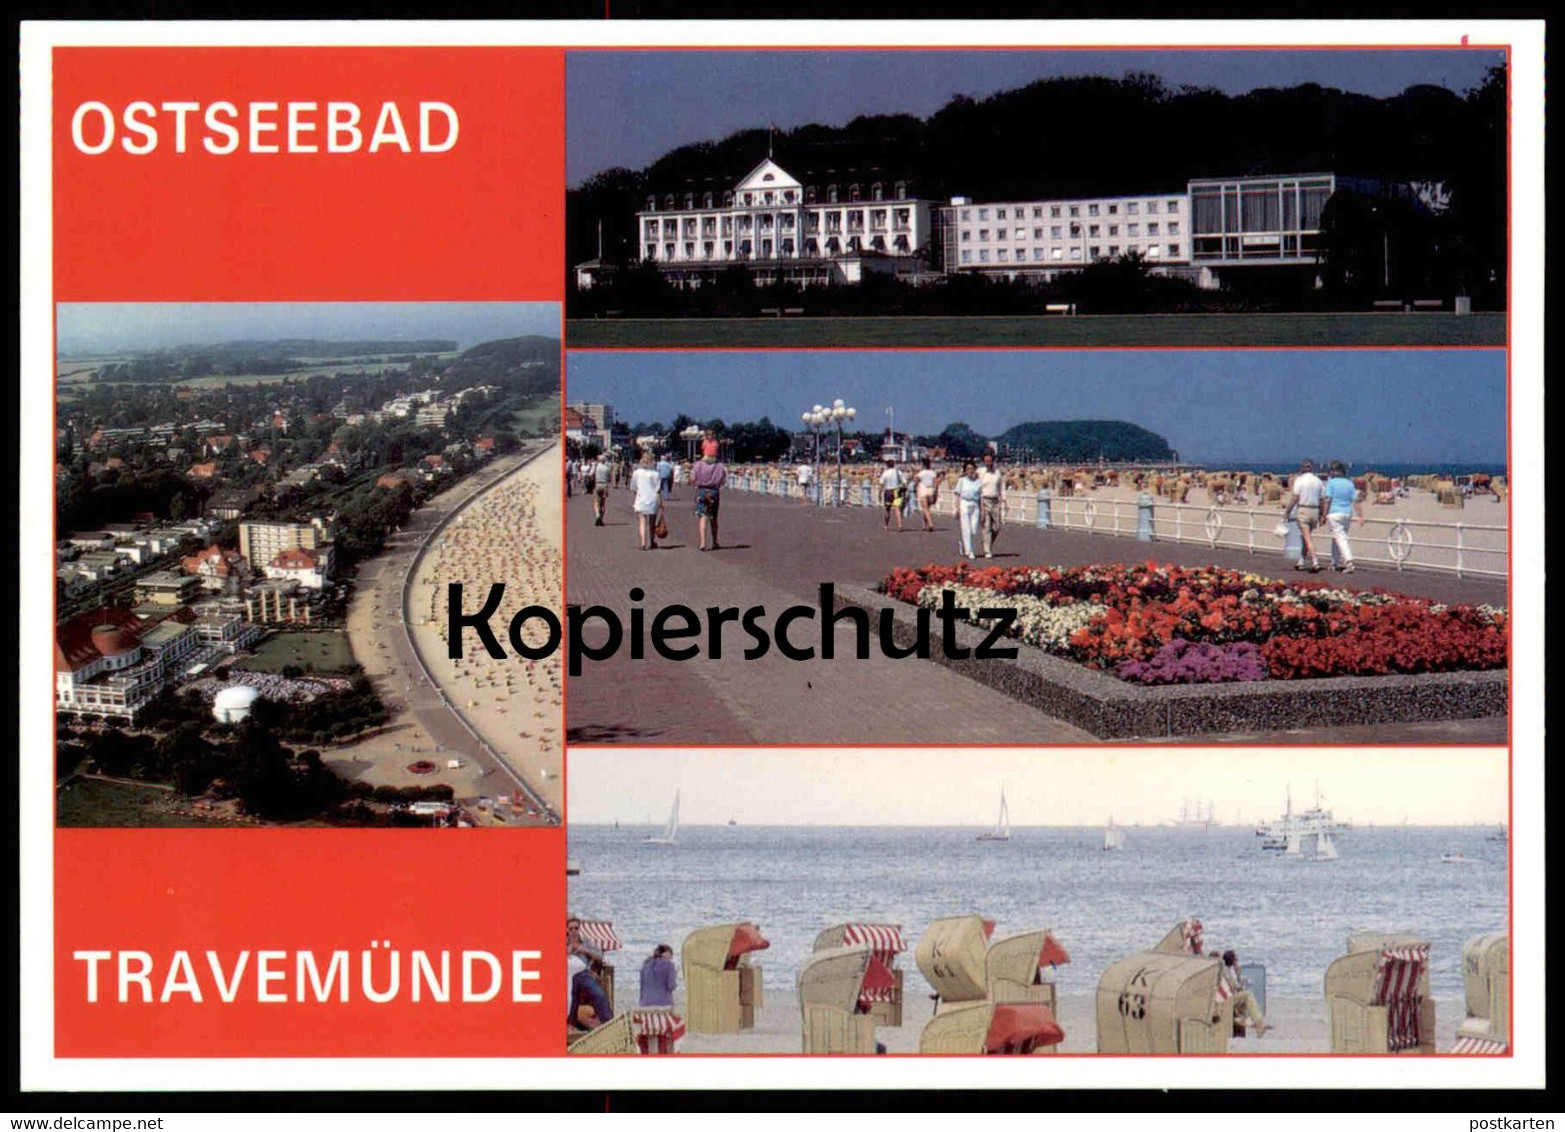 POSTKARTE TRAVEMÜNDE BLUMEN Flowers Fleurs Strandkorb Beach Chair Luebeck-Travemuende Cpa Postcard AK Ansichtskarte - Luebeck-Travemuende